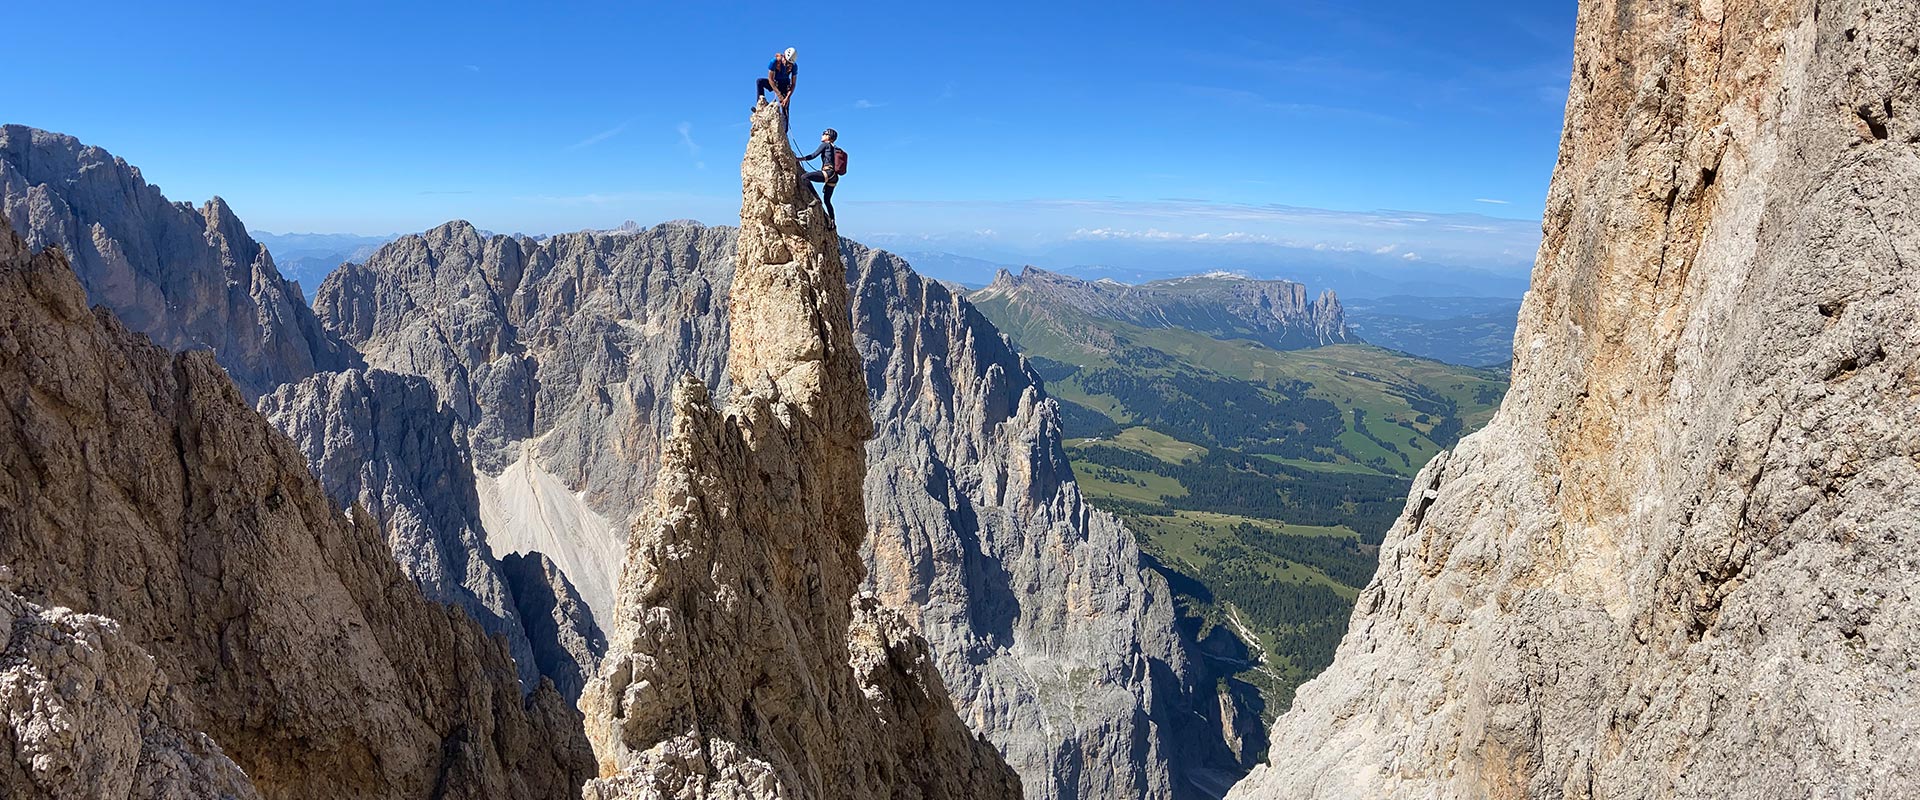 Climbing in Val Gardena with a mountain guide - Sassolungo